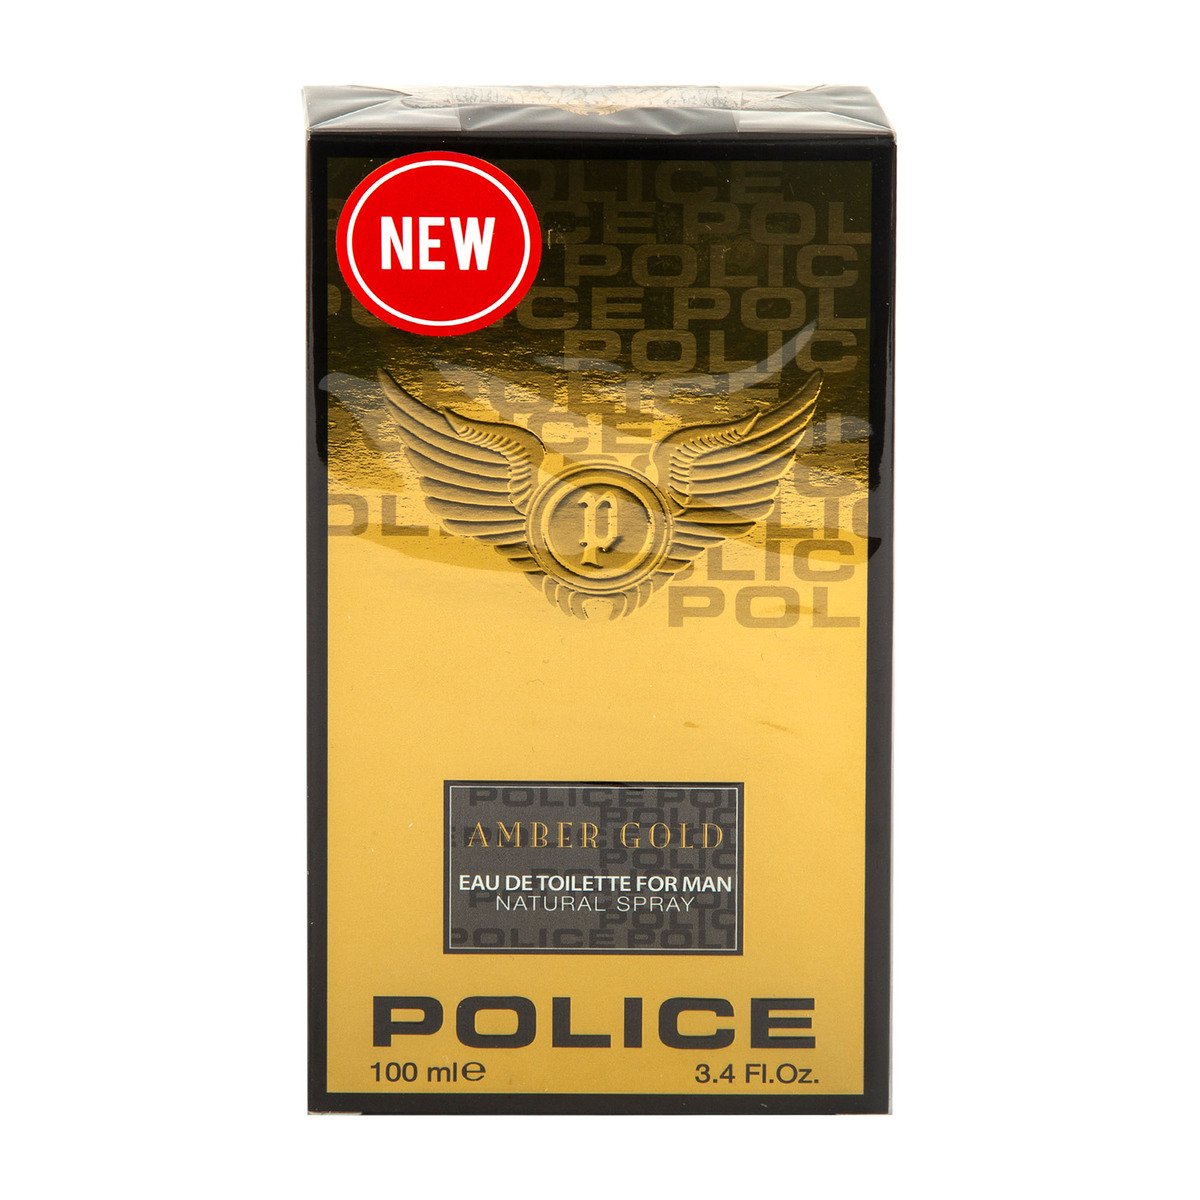 Police EDT Amber Gold for Men 100 ml